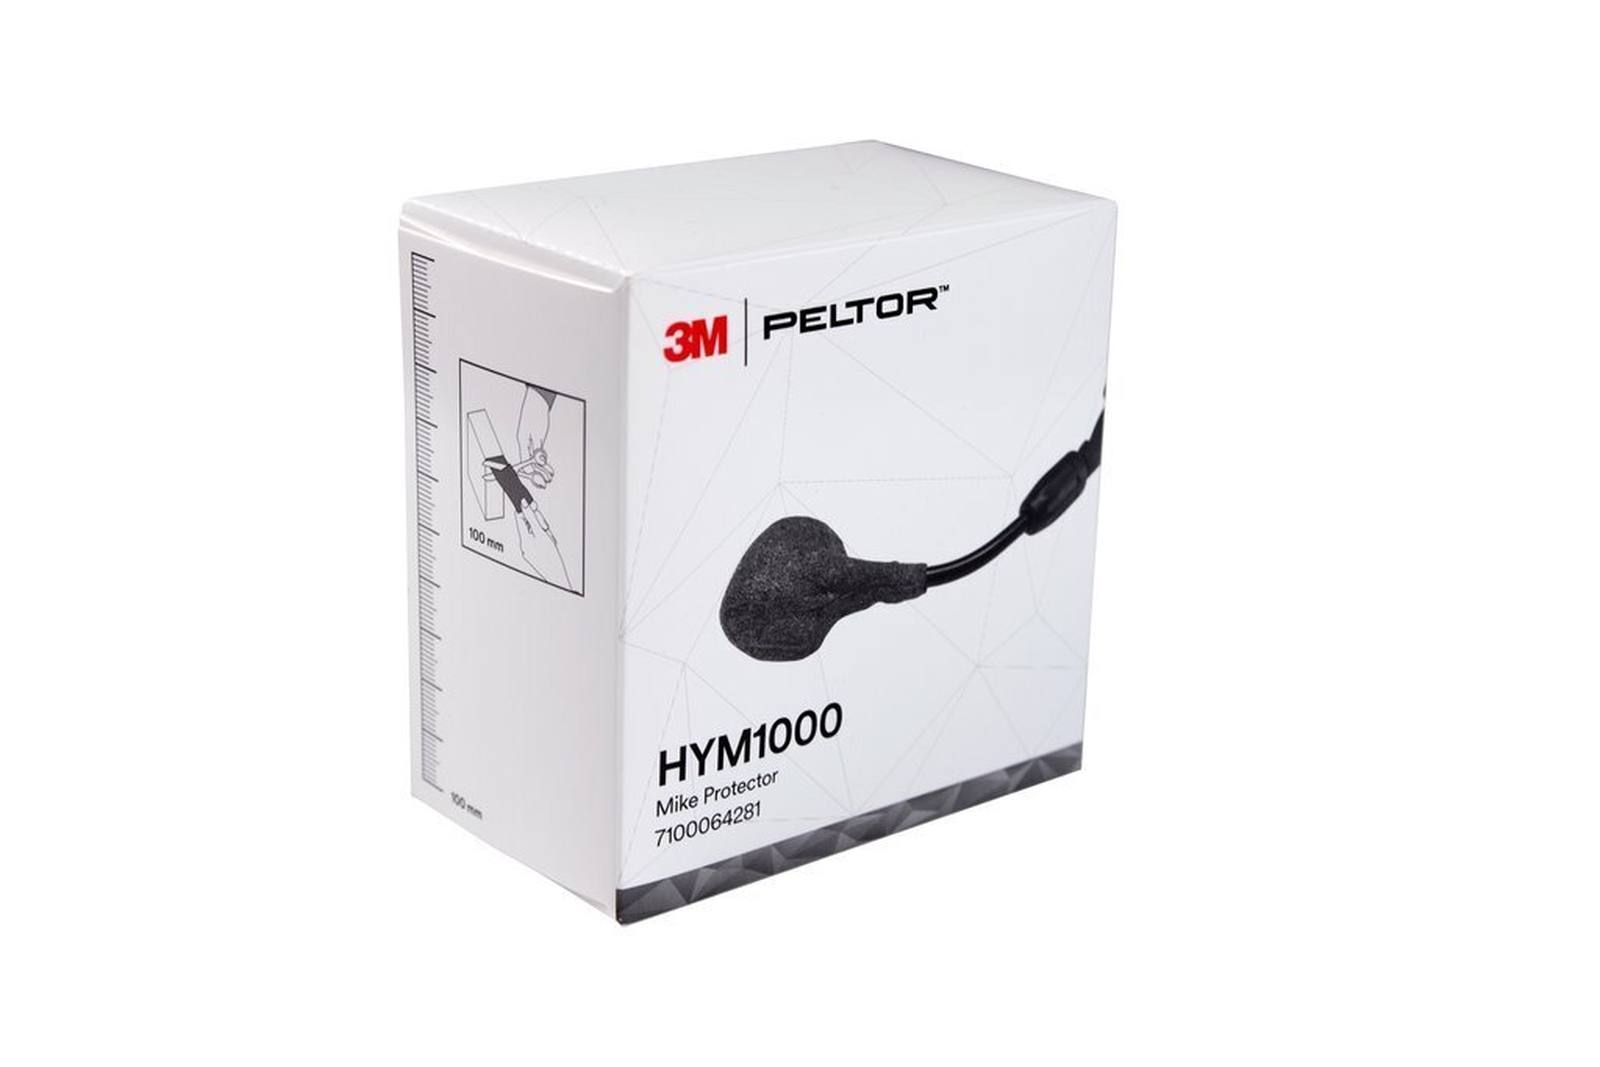 Cinta de protección de micrófono 3M Peltor, rollo de 5 m, gris, HYM1000